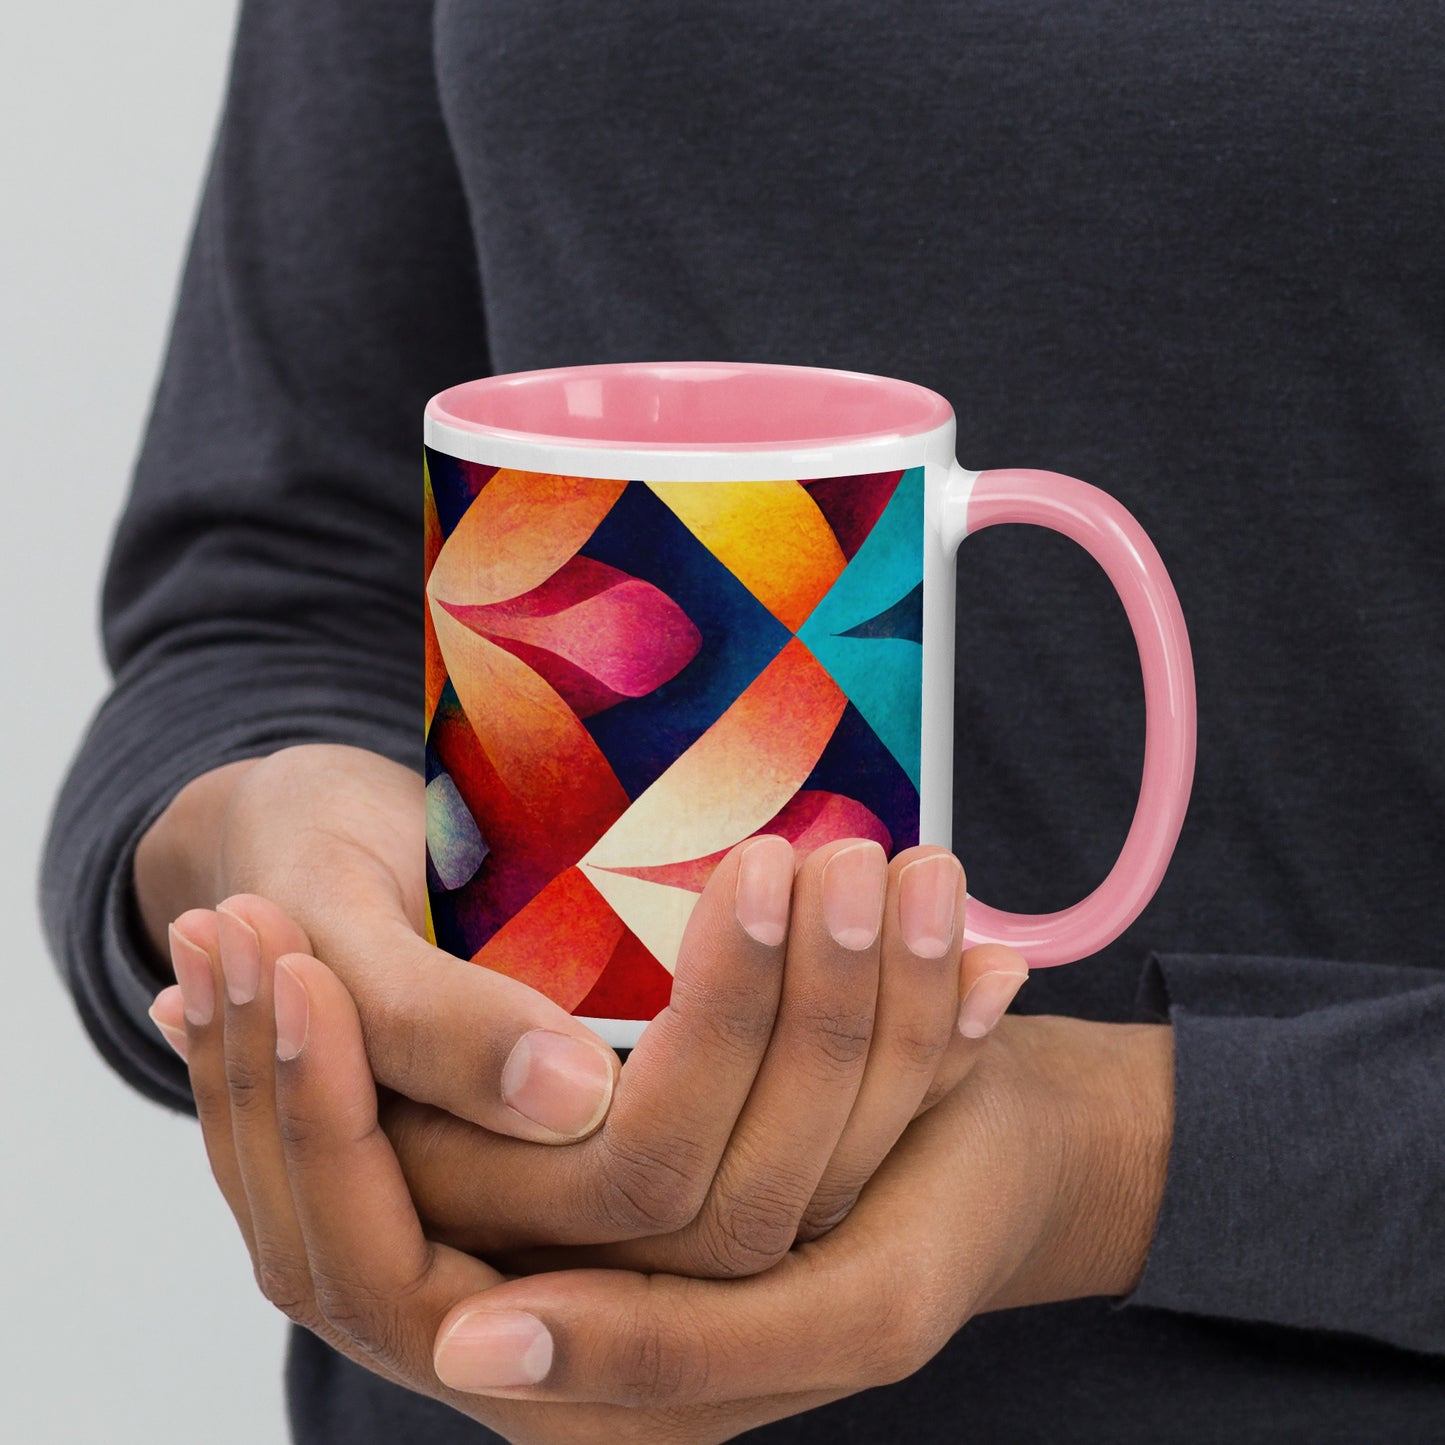 Petals Ceramic Mug with Color Inside